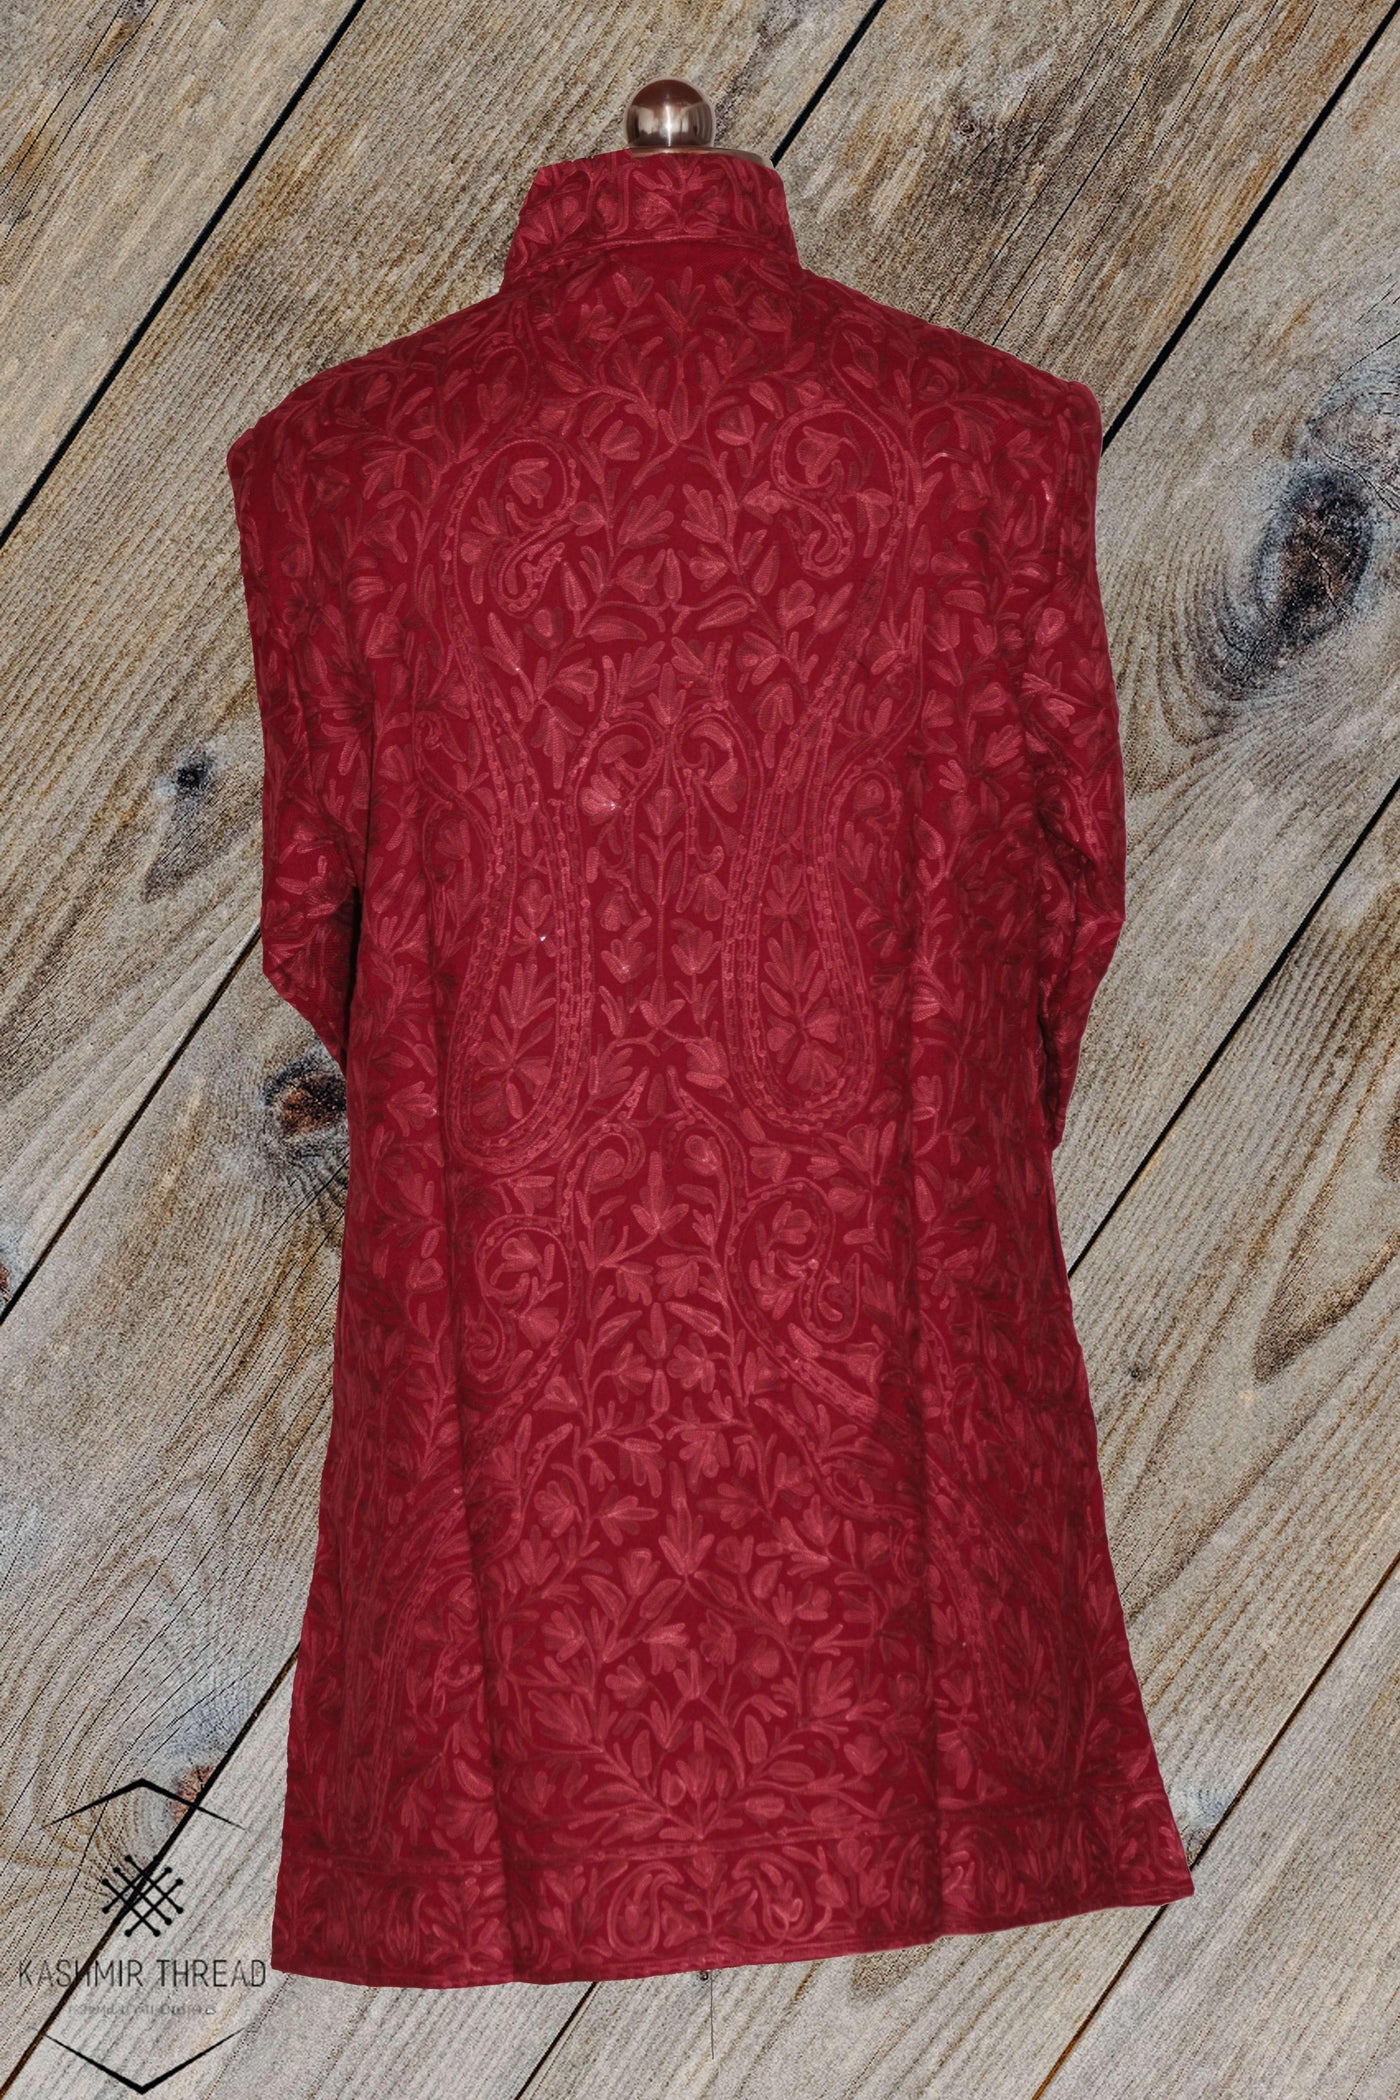 Kashmir Thread Coat XL (44) Red Kashmiri Woolen Jacket with Aari Embroidery